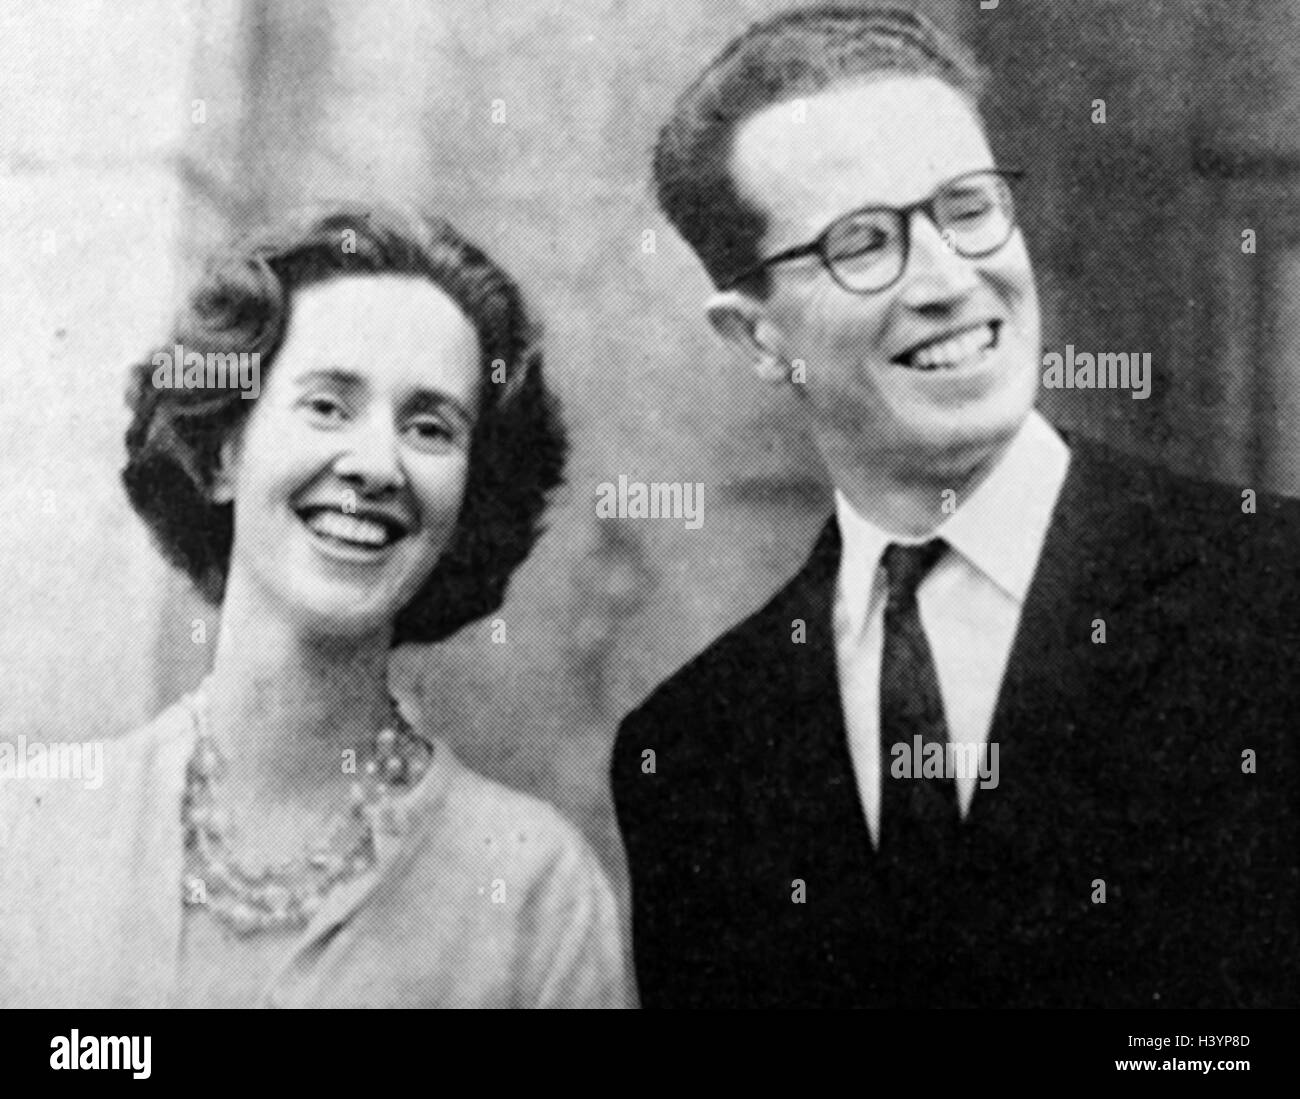 Foto von Baudouin von Belgien (1930-1993) König der Belgier, und seine Verlobte, Fabiola Mora y Aragón (1928-2014) Königin der Belgier. Vom 20. Jahrhundert Stockfoto